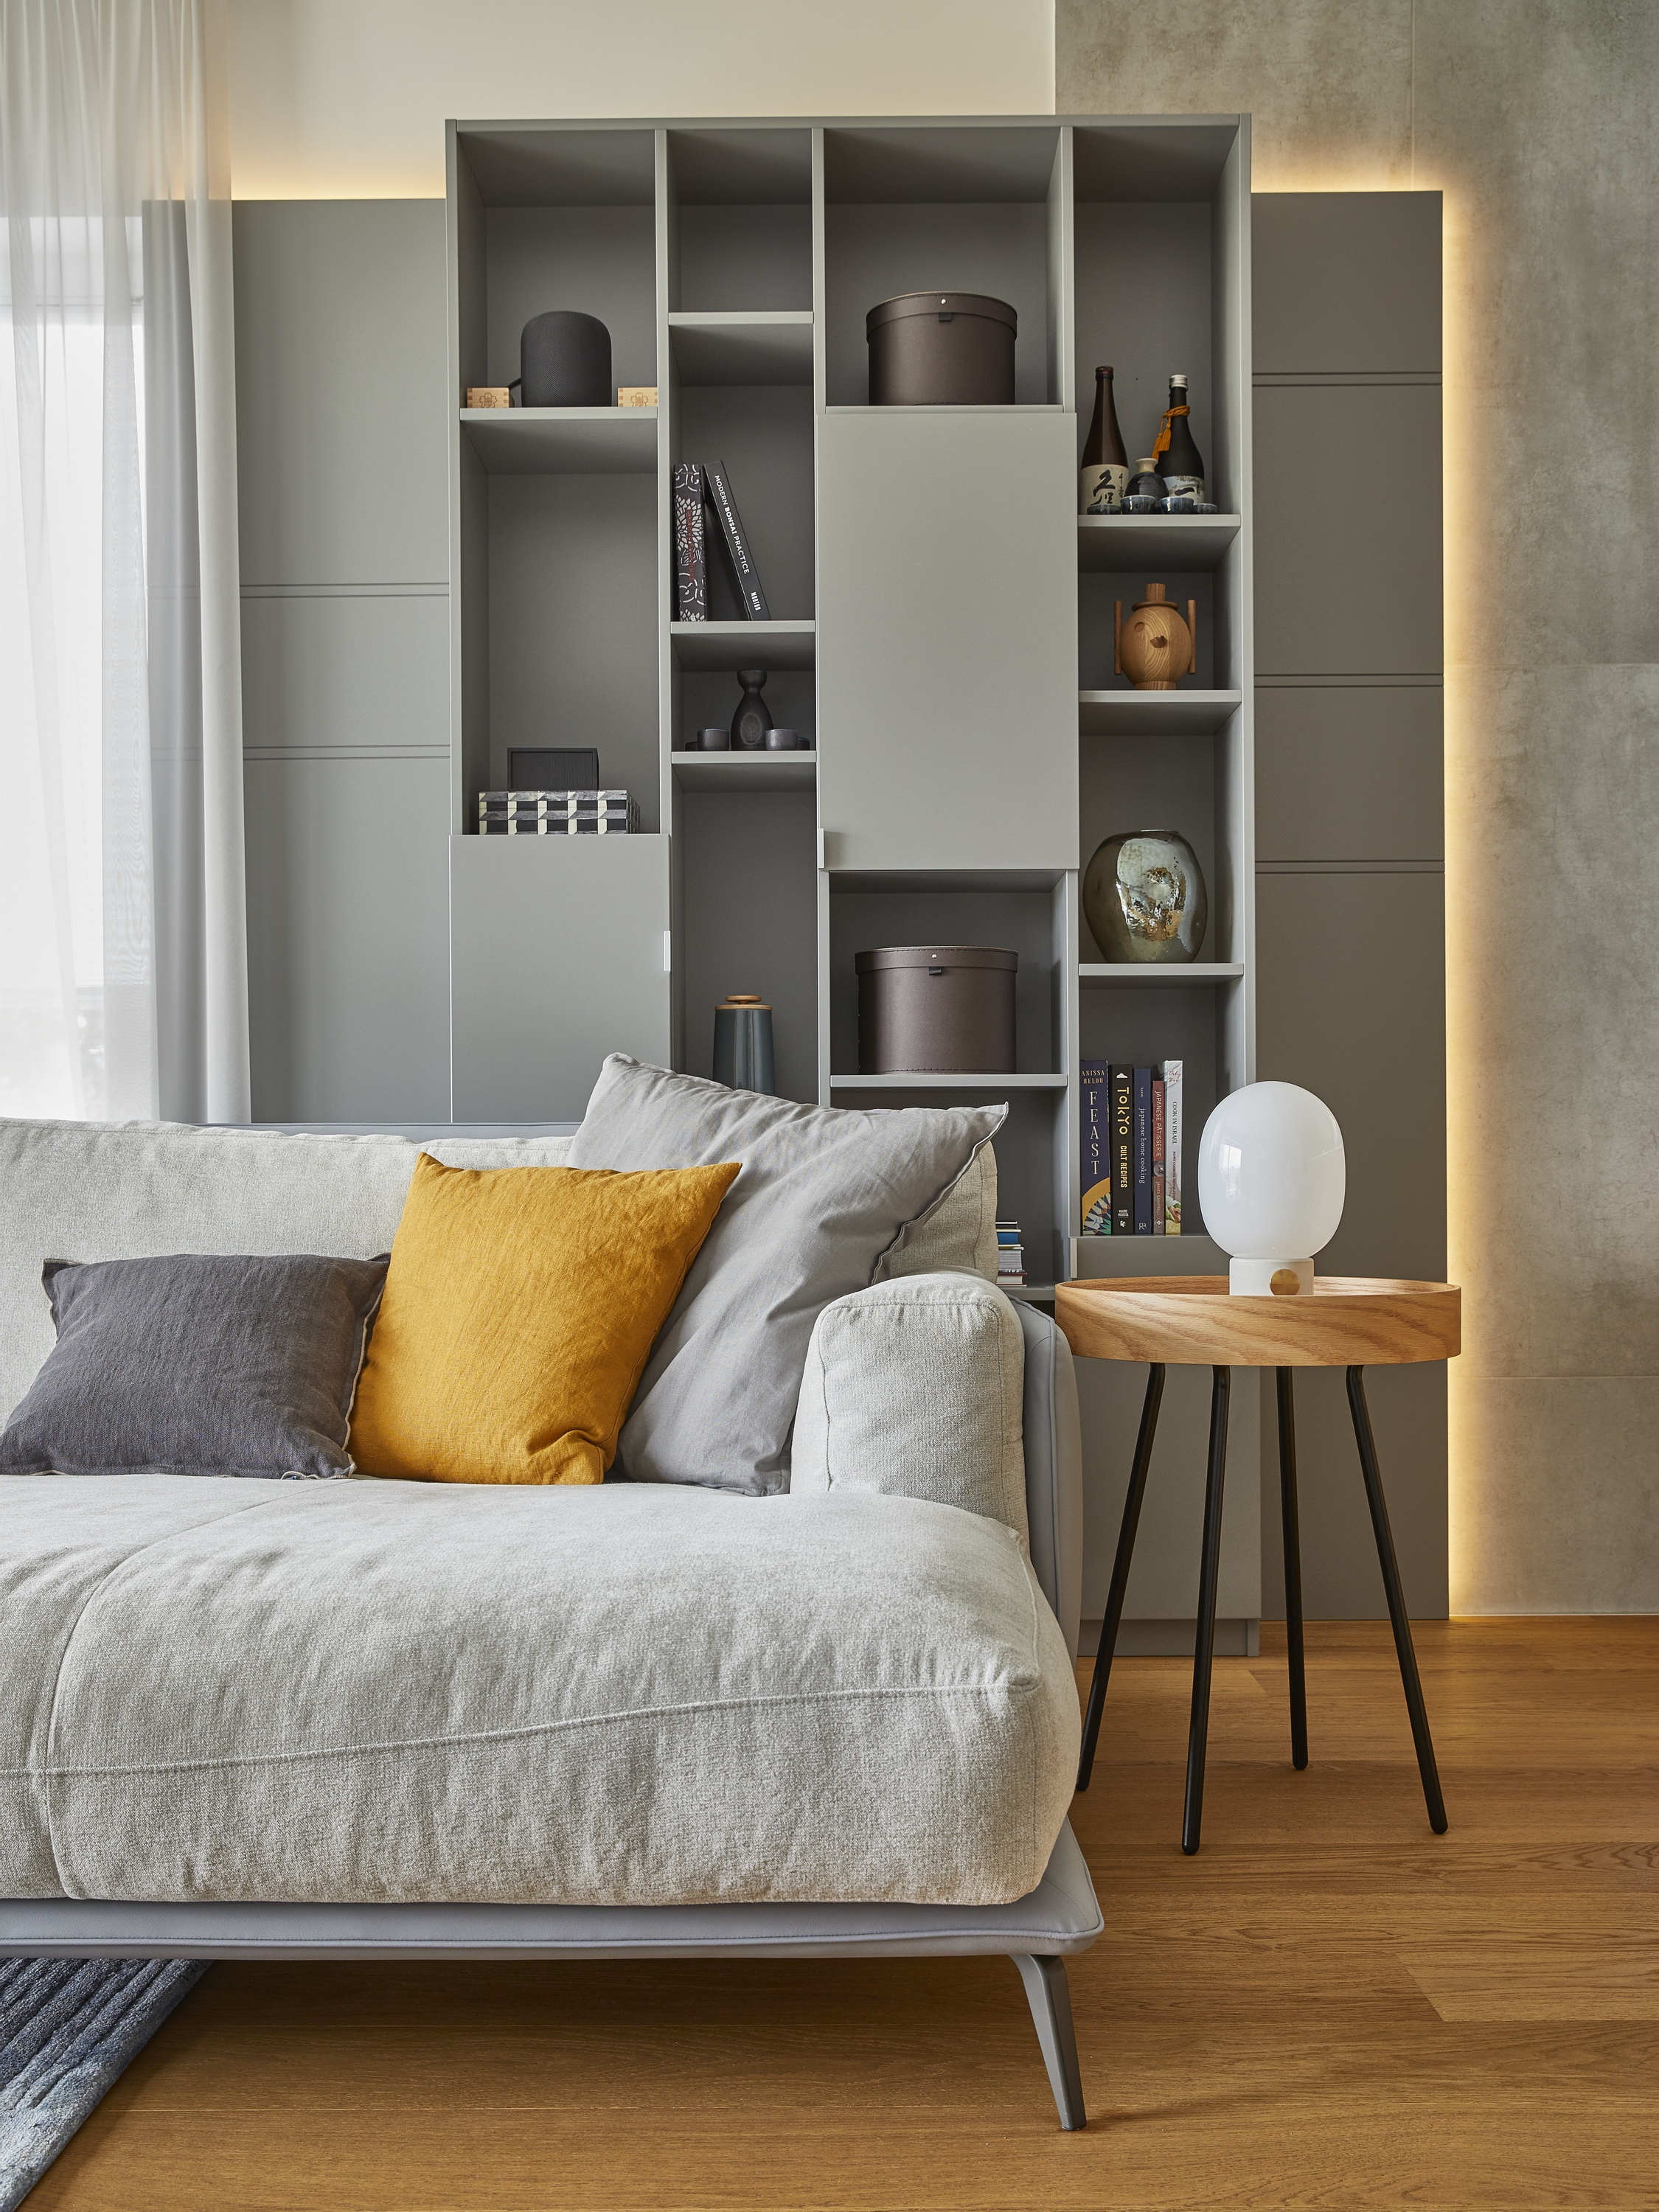 A nappaliban meghatározó szerepet kap az egyedi tervezésű, látványos polcrendszer saját megvilágí - tással és az alacsony, natur színű, kényelmes kanapé. 